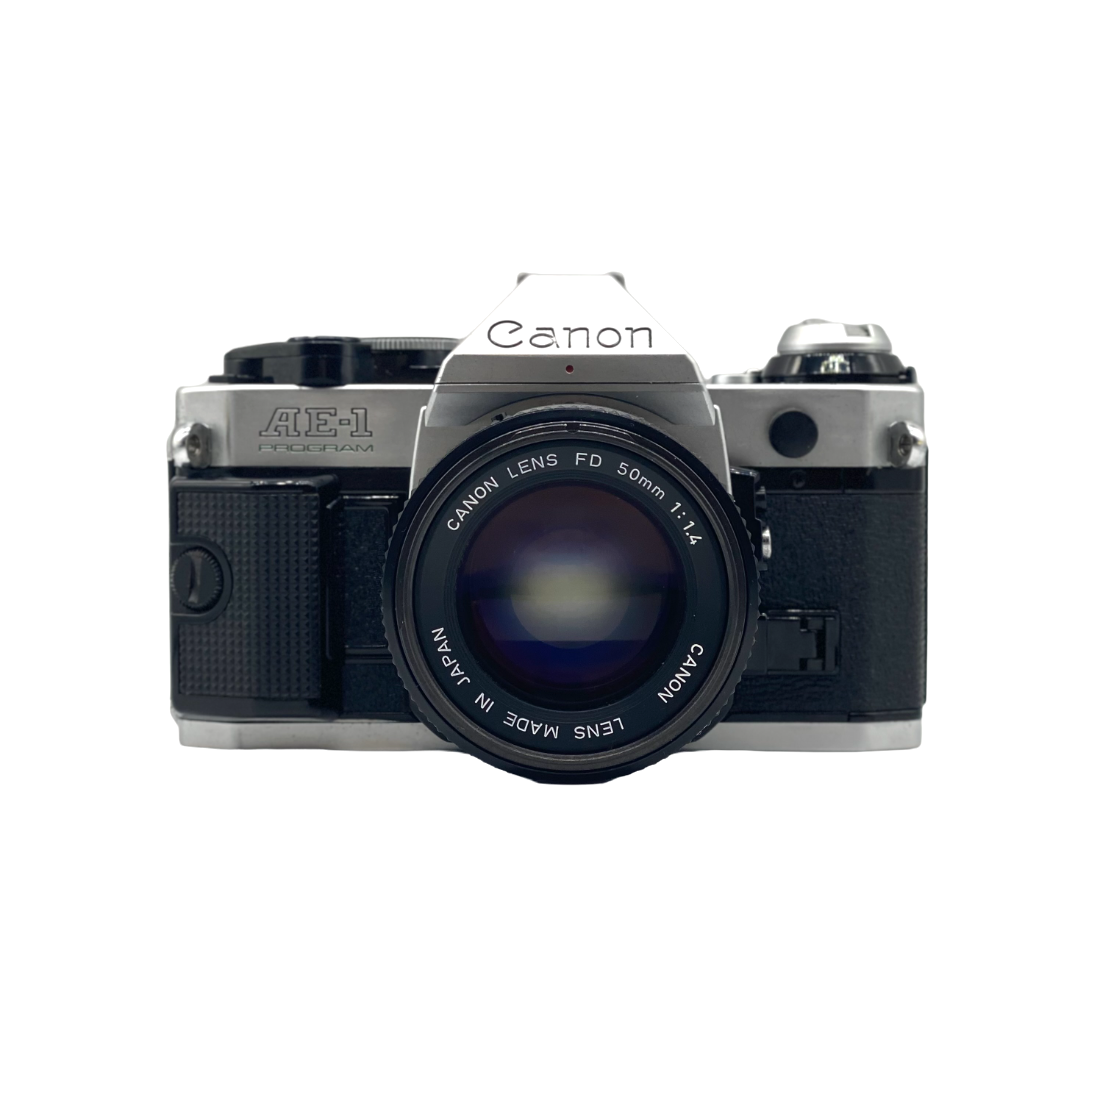 Canon AE-1 Program Camera w/FD 50mm f/1.4